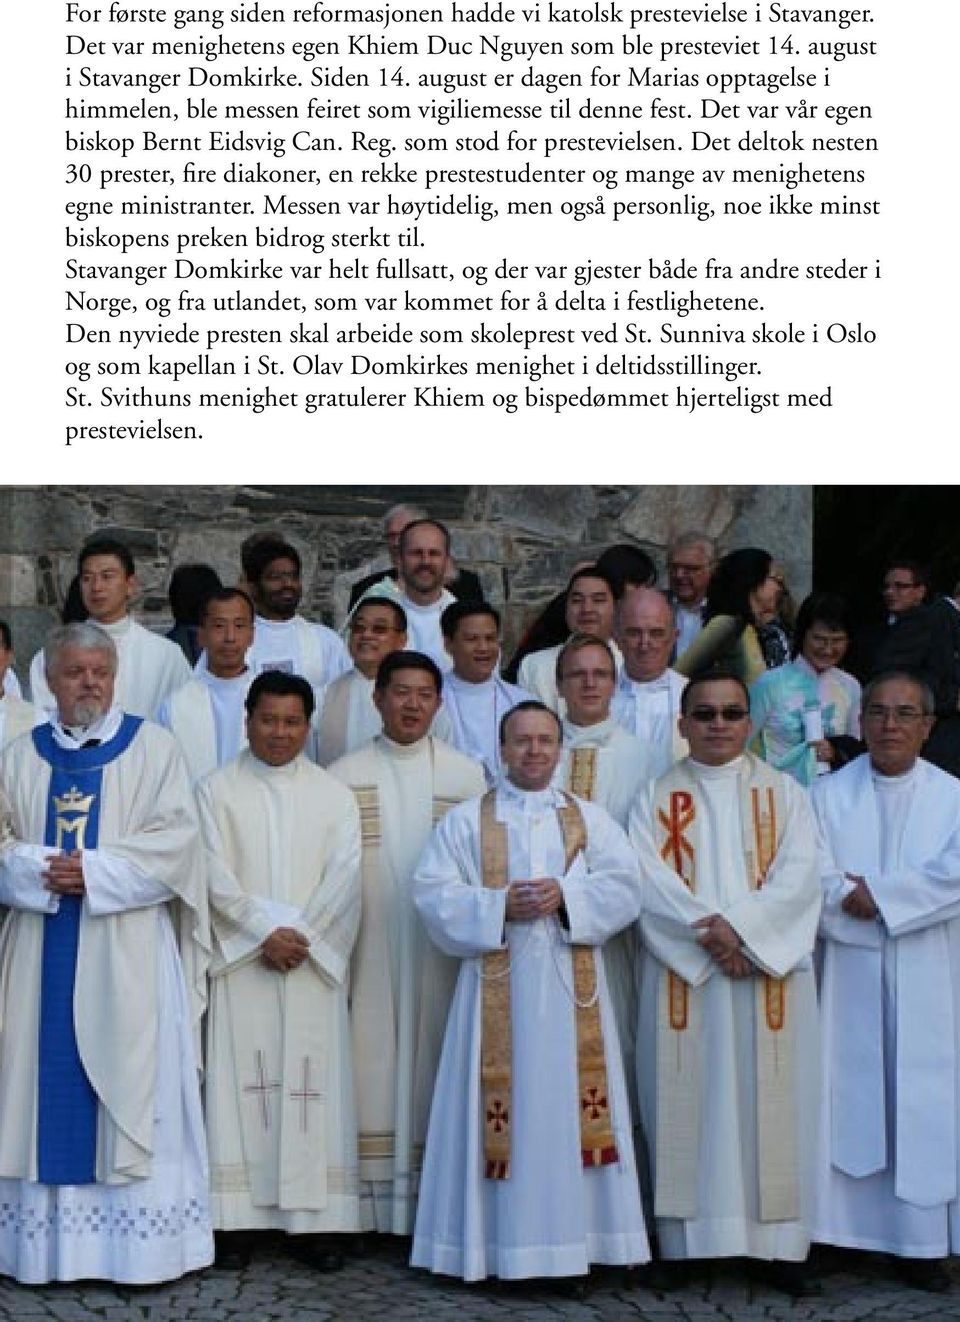 Det deltok nesten 30 prester, fire diakoner, en rekke prestestudenter og mange av menighetens egne ministranter.